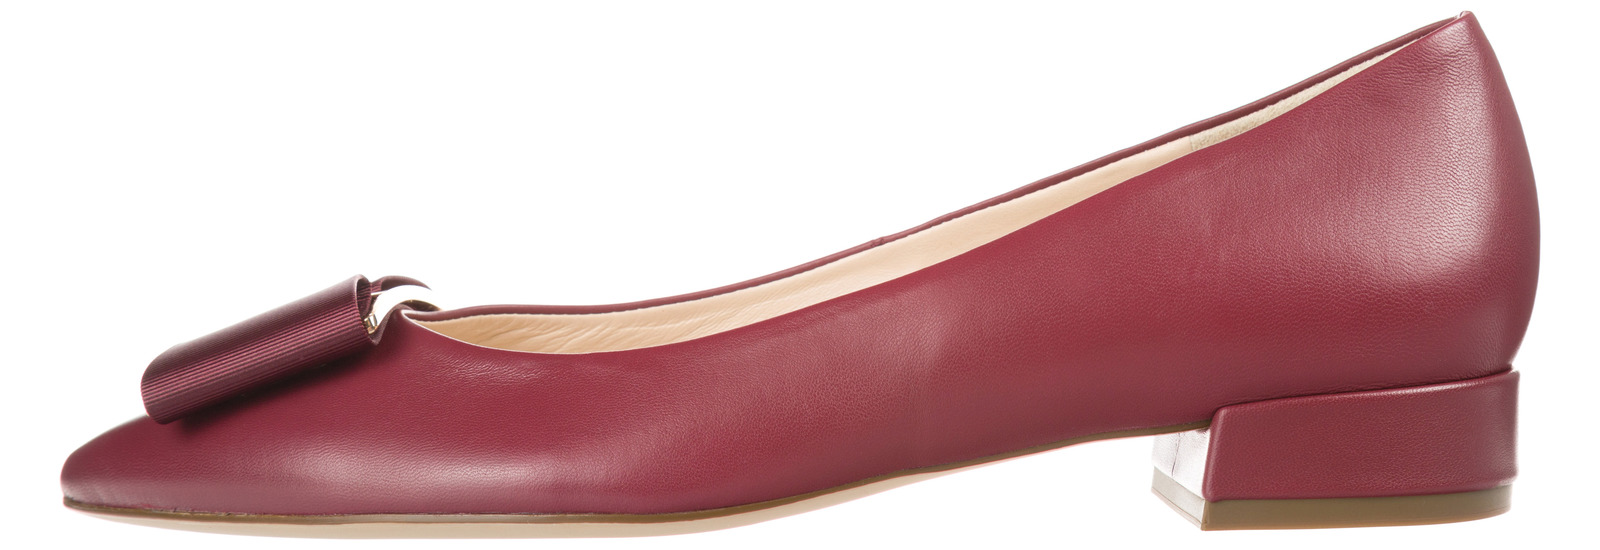 Högl Balerina cipő 37,5, Piros fotója